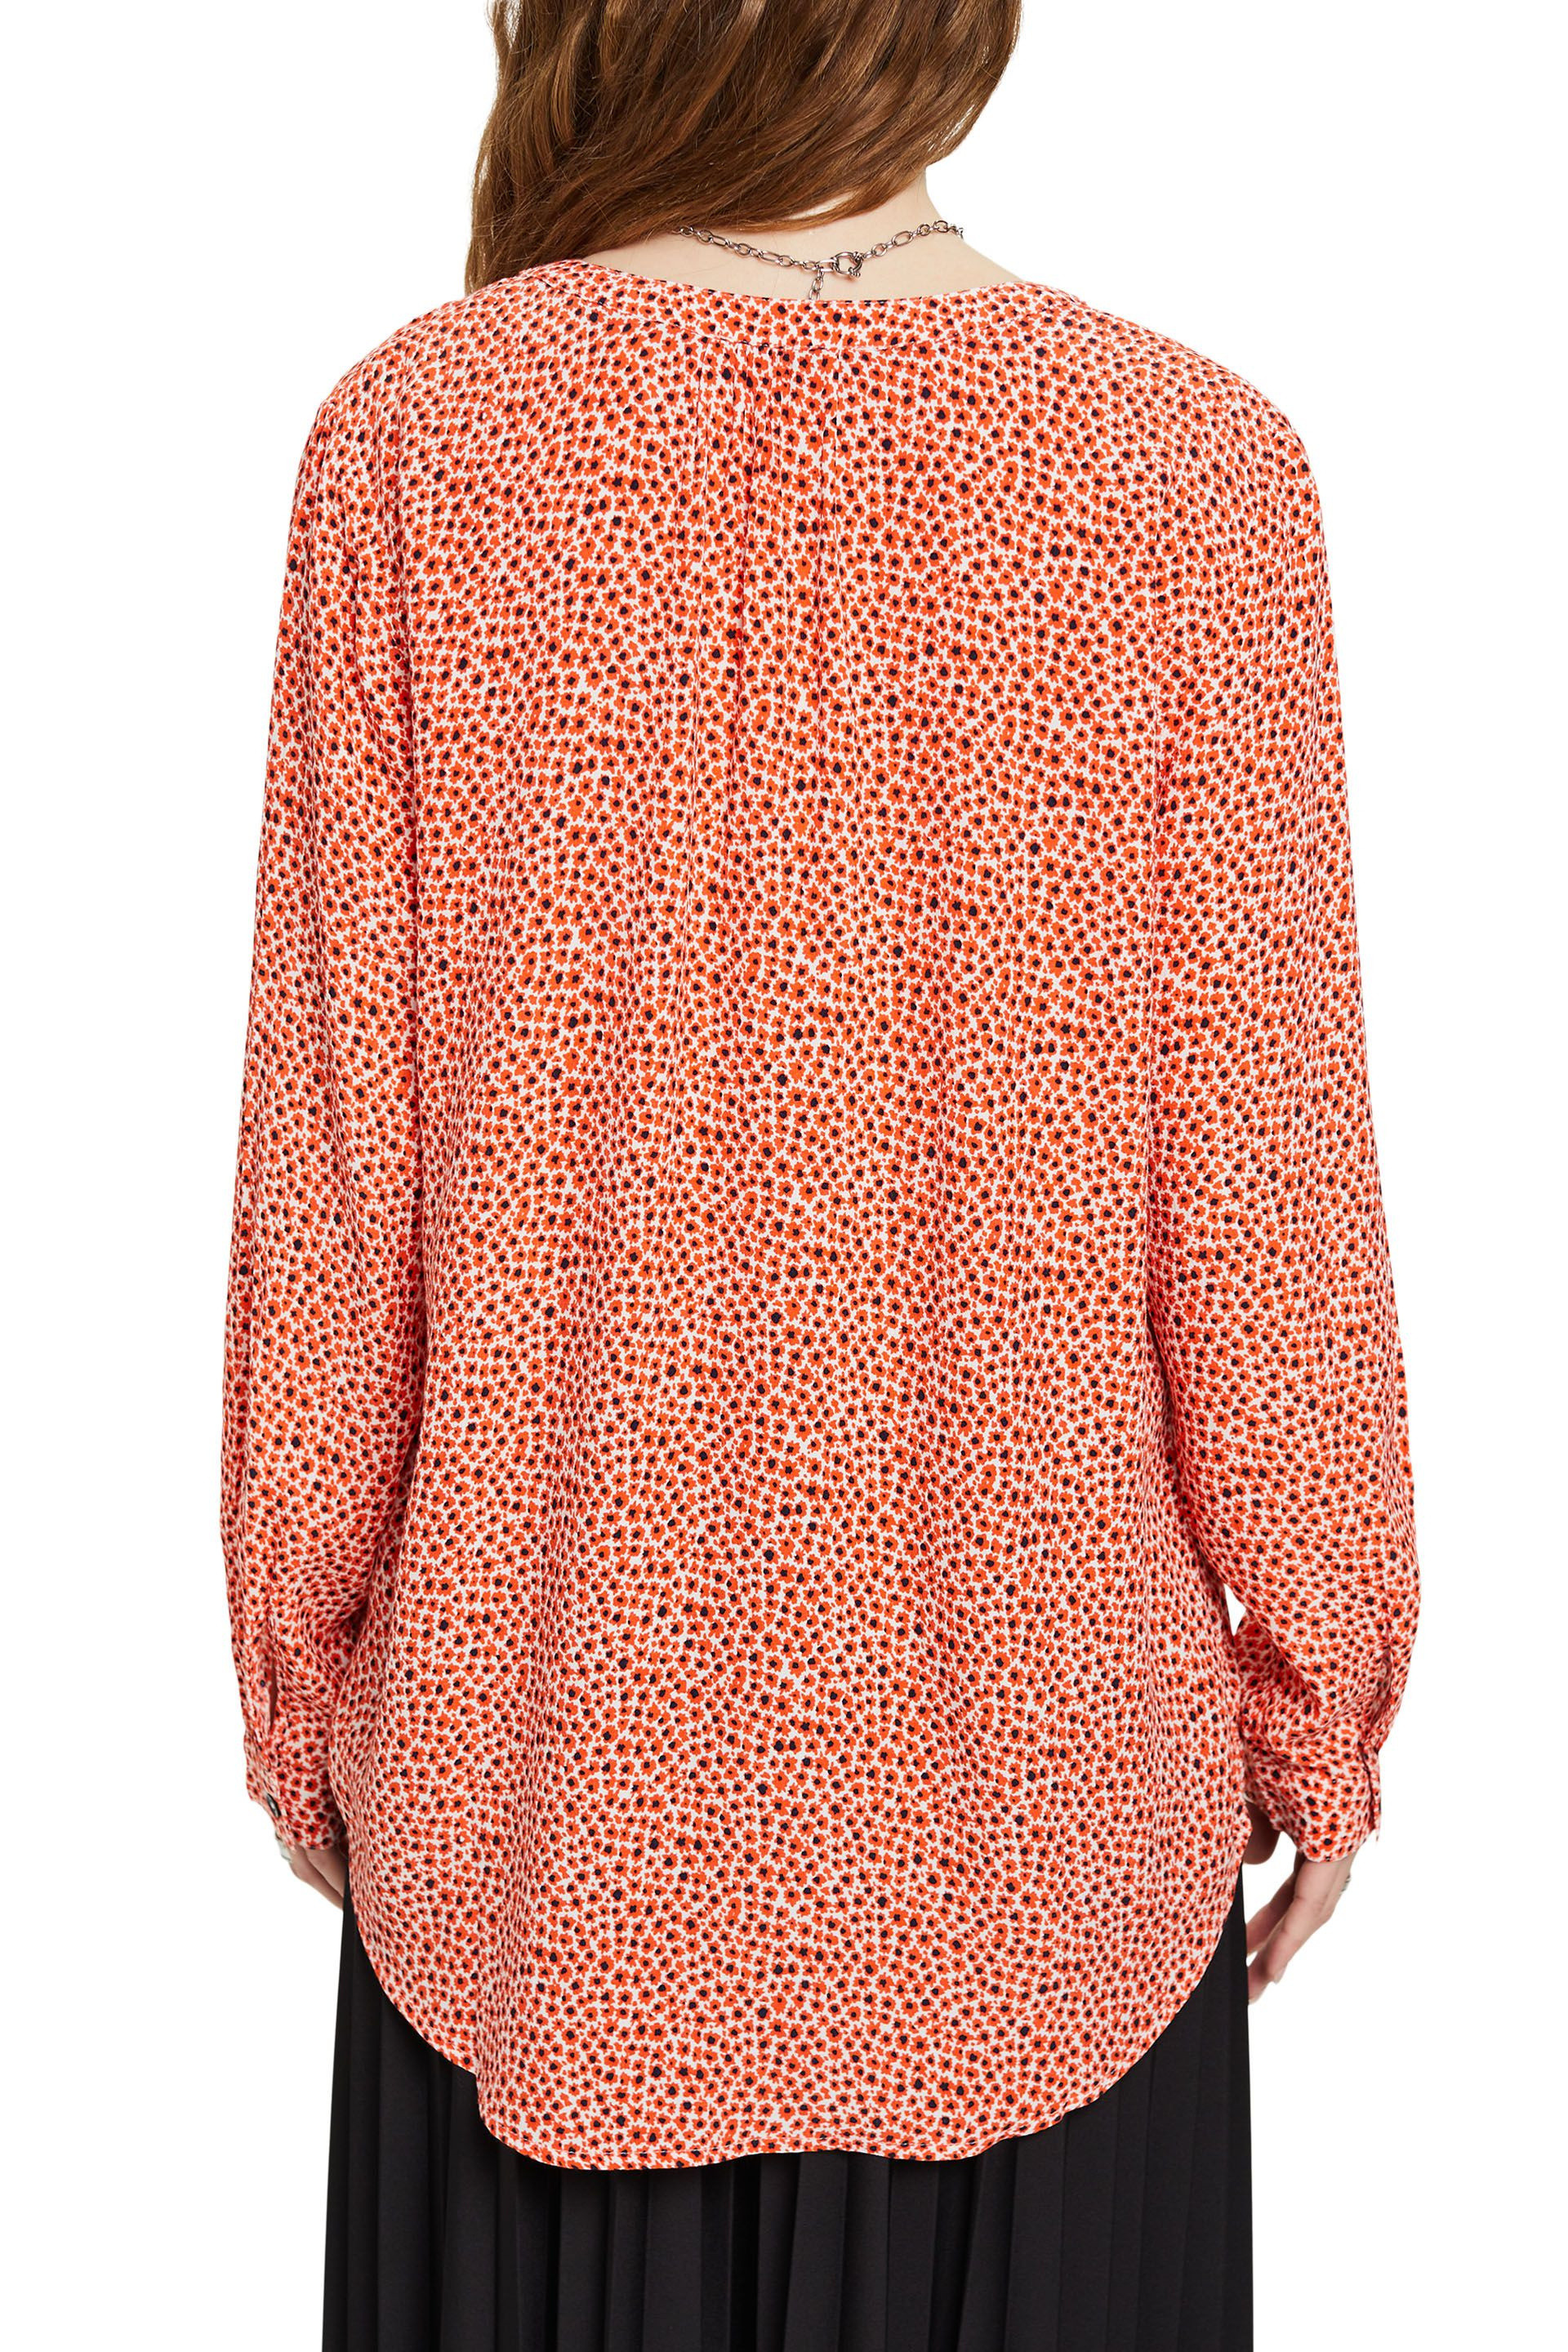 Esprit - Floral V-neck shirt, Orange, large image number 3